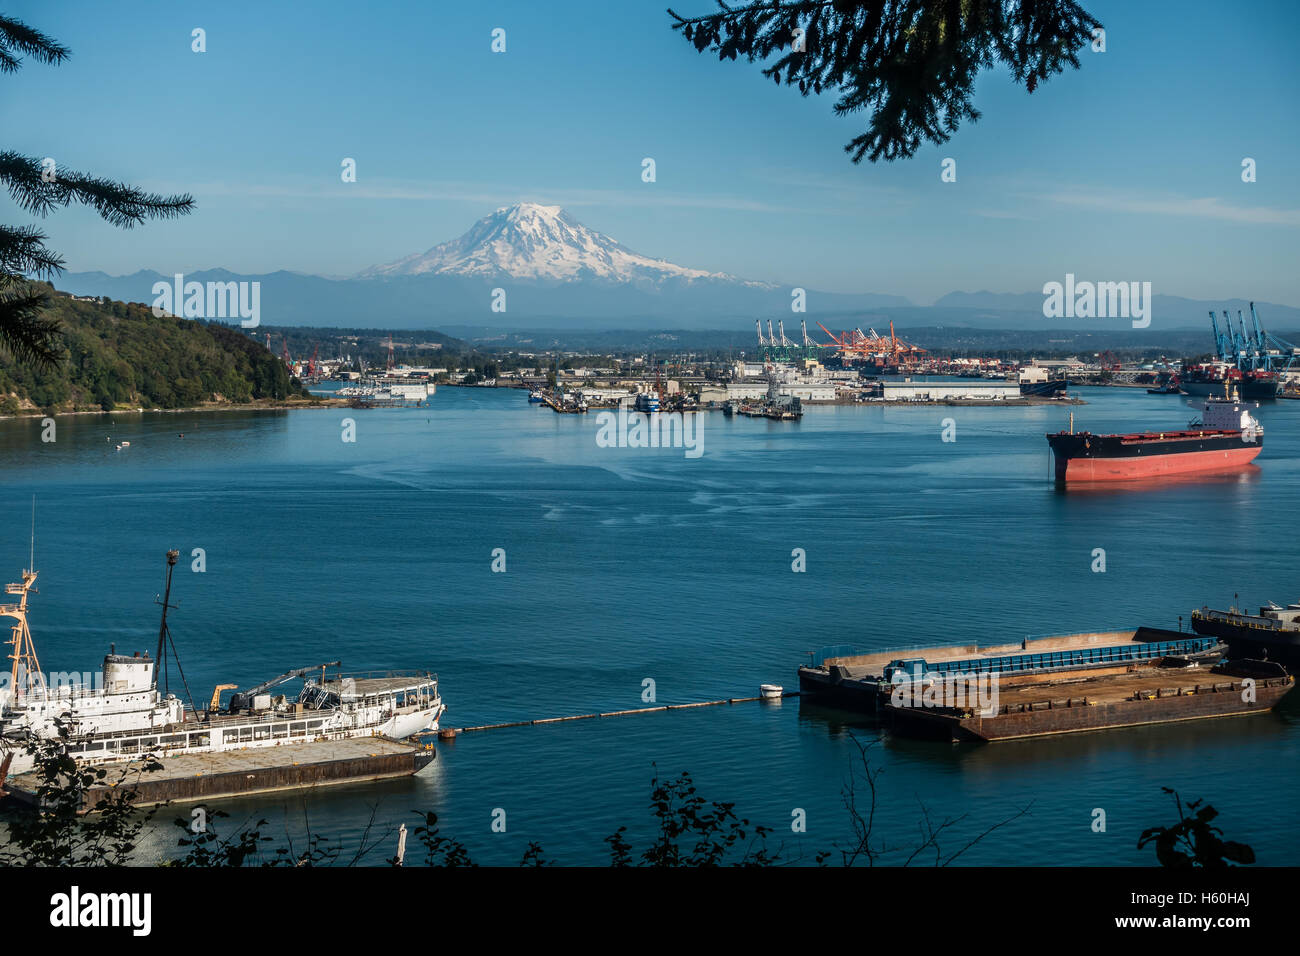 Eine Panorama-Aufnahme des Port of Tacoma mit majestätischen Mount Rainier in der Ferne. Stockfoto